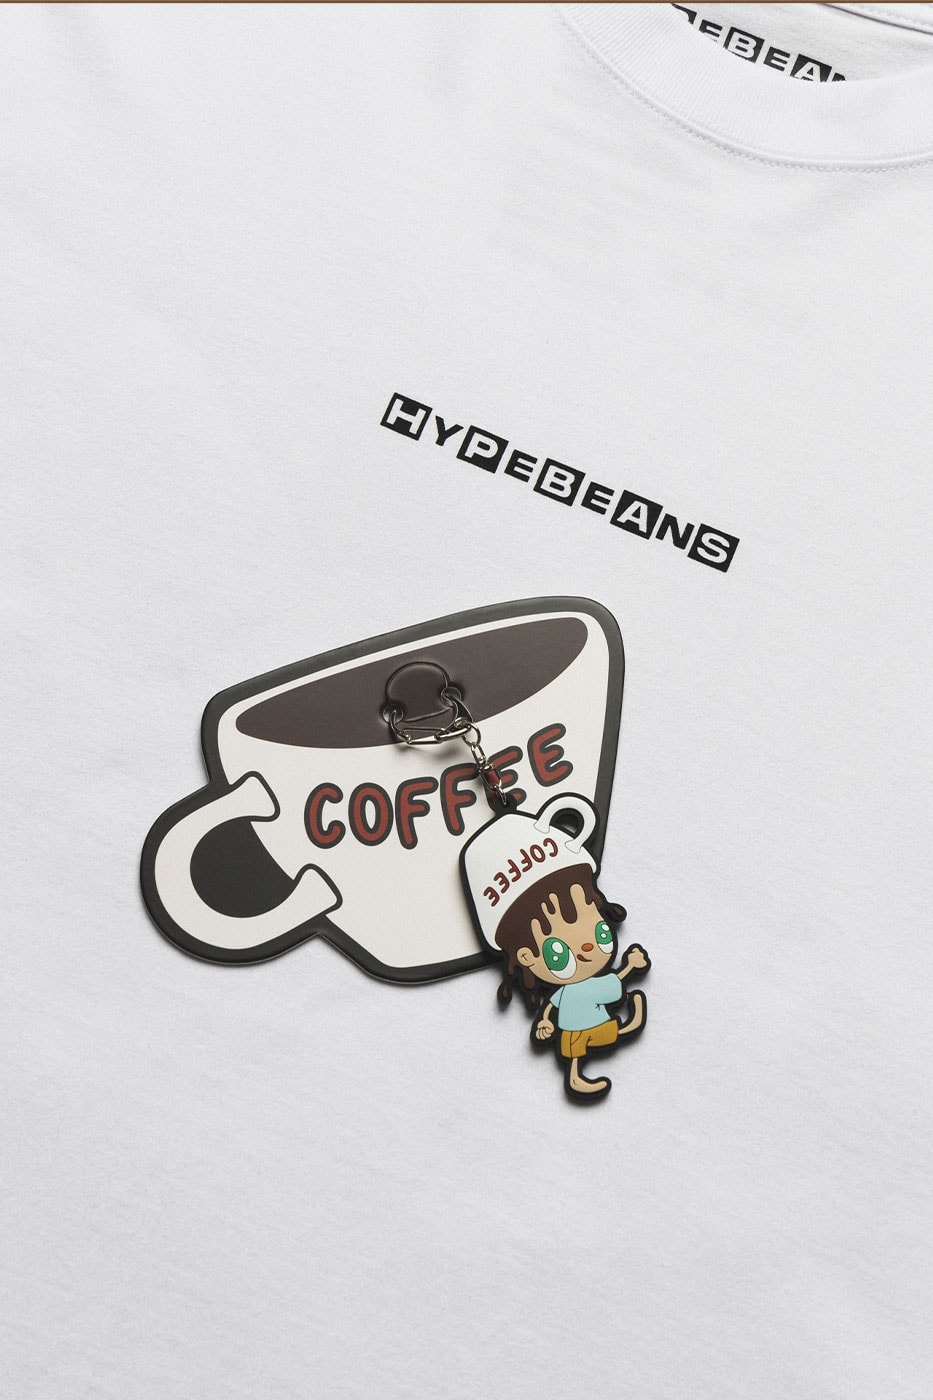 ハビア・カジェハがハイプビーンズとのコラボカプセルコレクションを発表 Hypebeans Partners With World-Renowned Artist Javier Calleja on an Exclusive Capsule Collection keychains t-shirts seoul hong kong cafeto